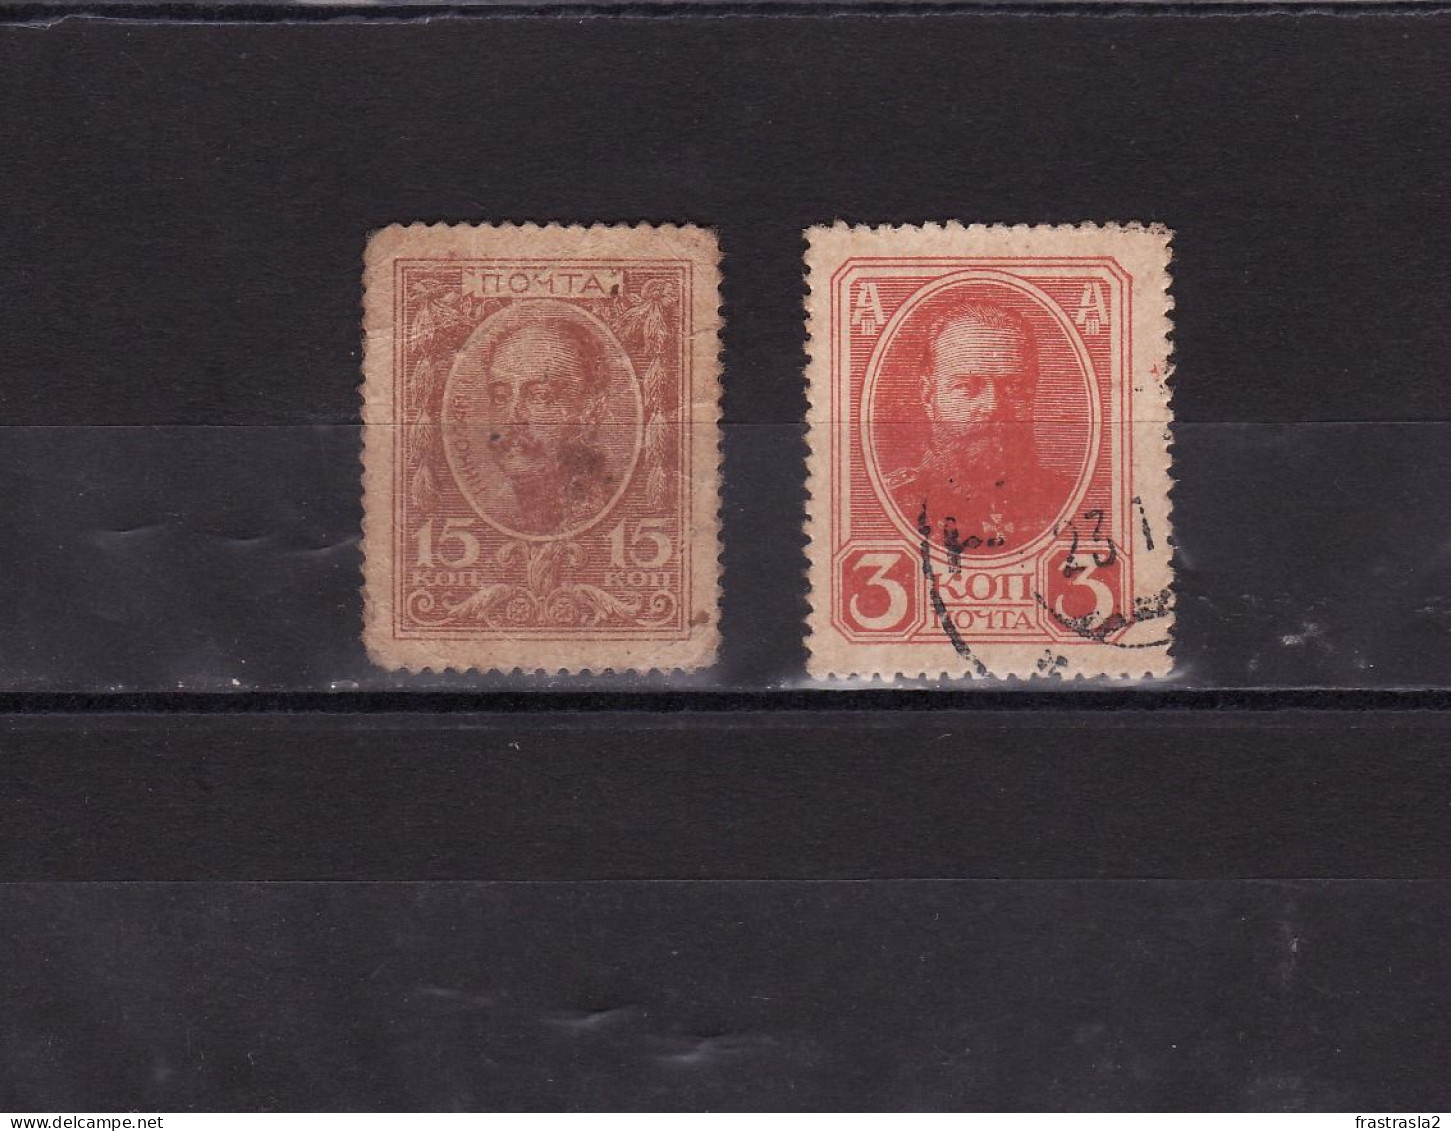 2 SELLOS RUSIA 1915 Y1917 USADOS COMO PAPEL MONEDA NICOLAS I Y ALEXANDER III, INSCRIPCION AL DORSO - Used Stamps